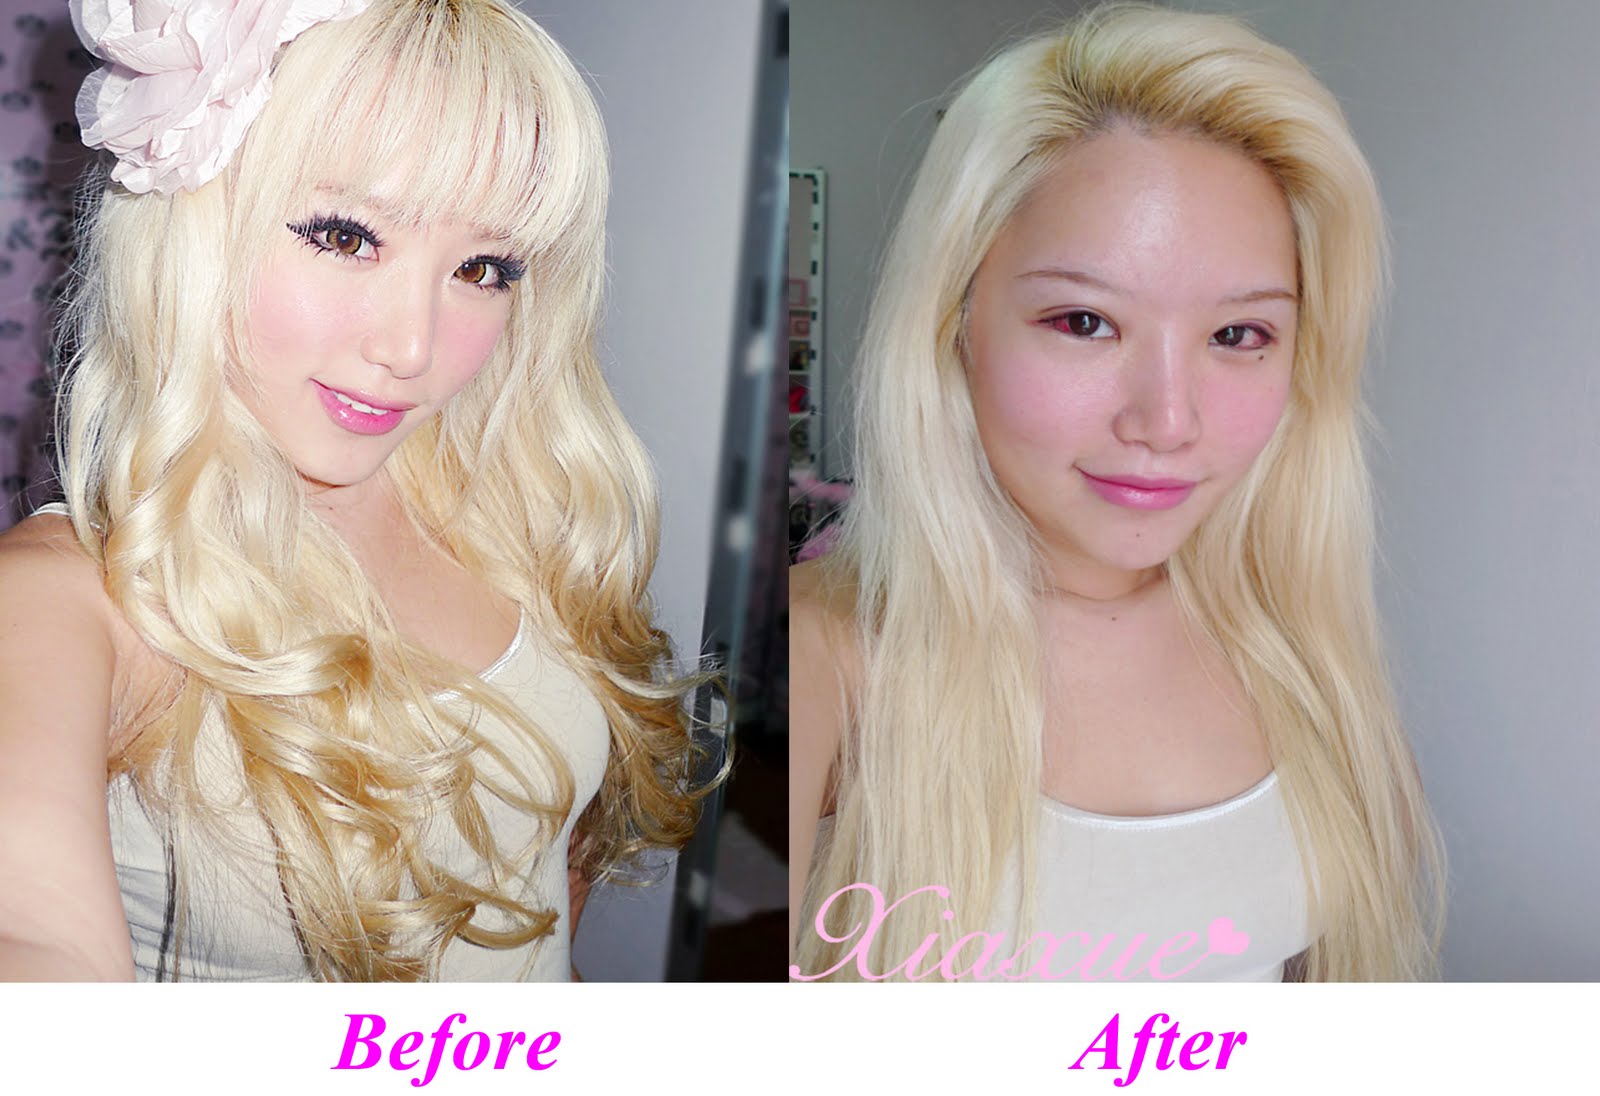 http://3.bp.blogspot.com/-oZ55pLg9tAA/T5PhRmGTiQI/AAAAAAAAErQ/D-qagRc0grM/s1600/xiaxue-plastic-surgery-before-after.jpg